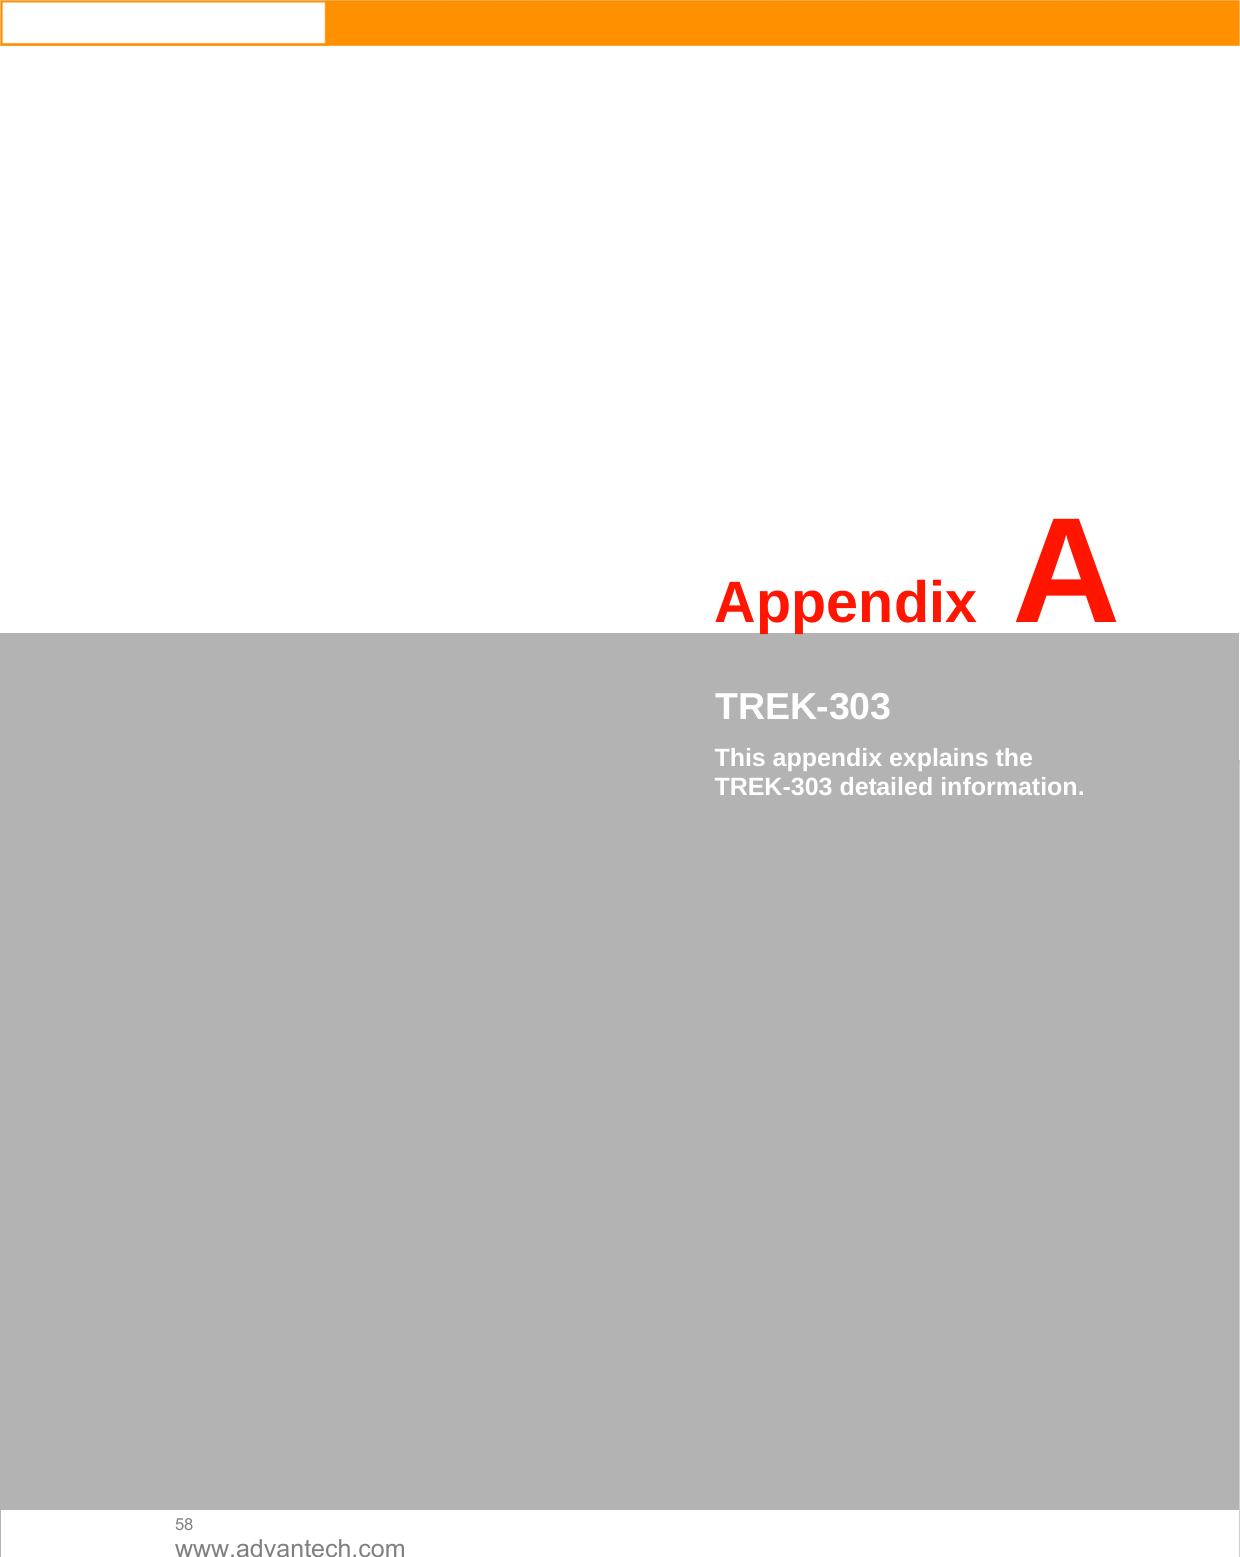  58 www.advantech.com                     AppendixA   CTREK-303  This appendix explains the TREK-303 detailed information.                             